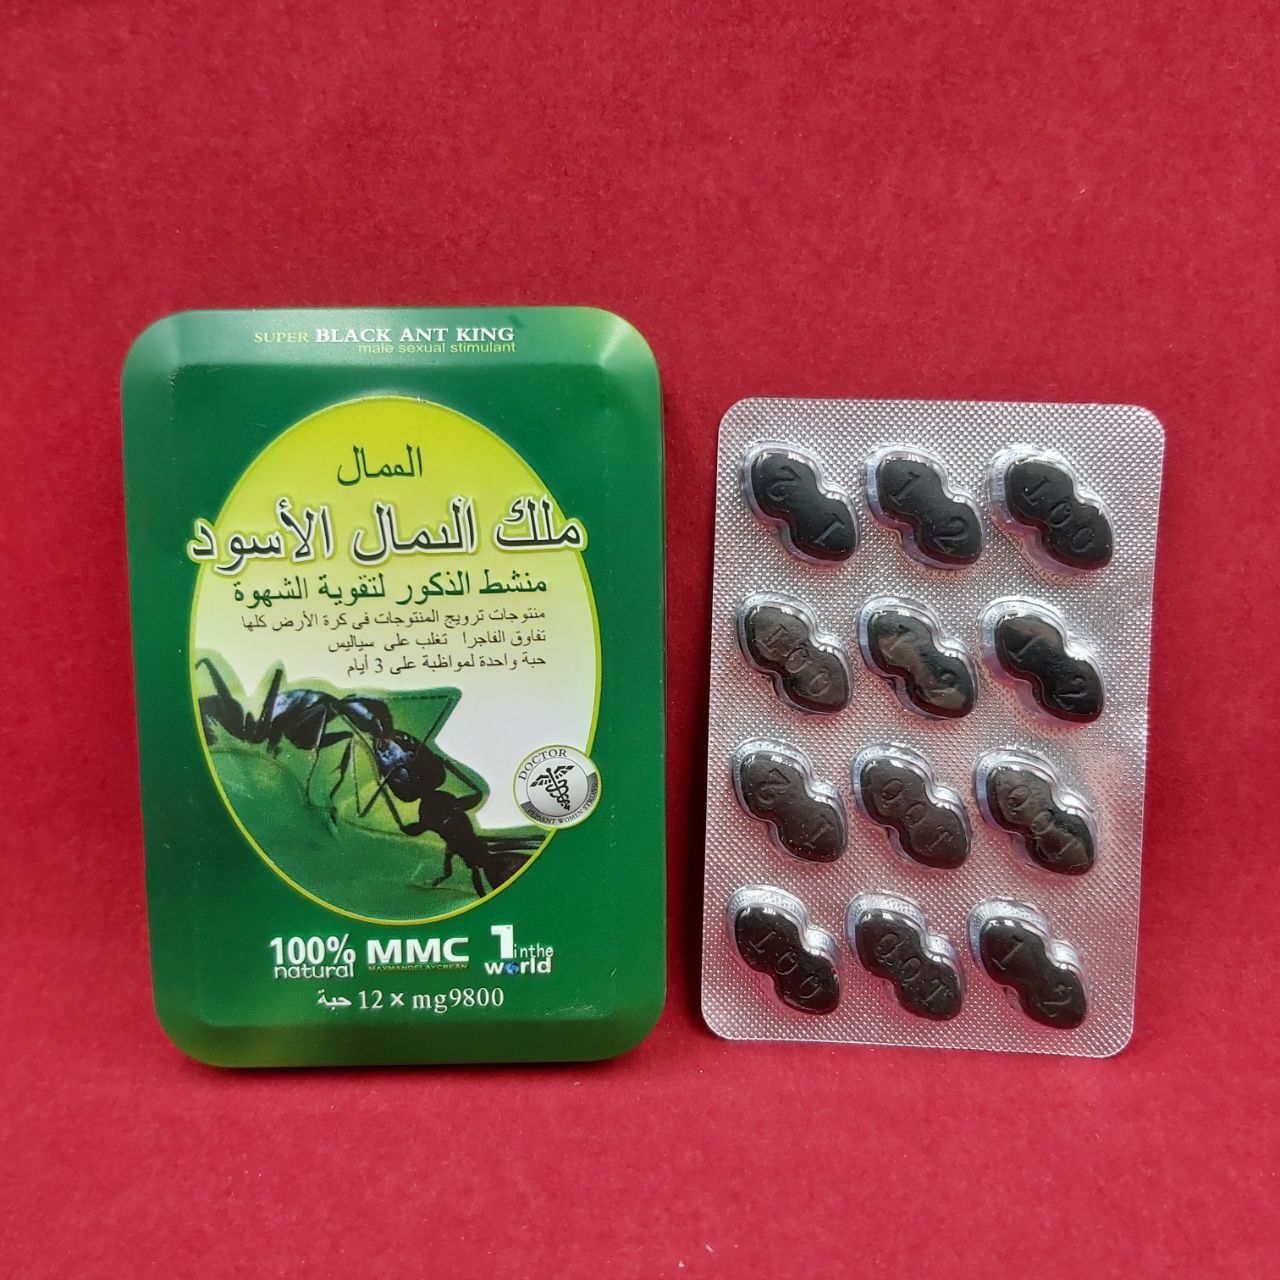 БАД Таблетки для потенции Black Ant King черный муравей 1